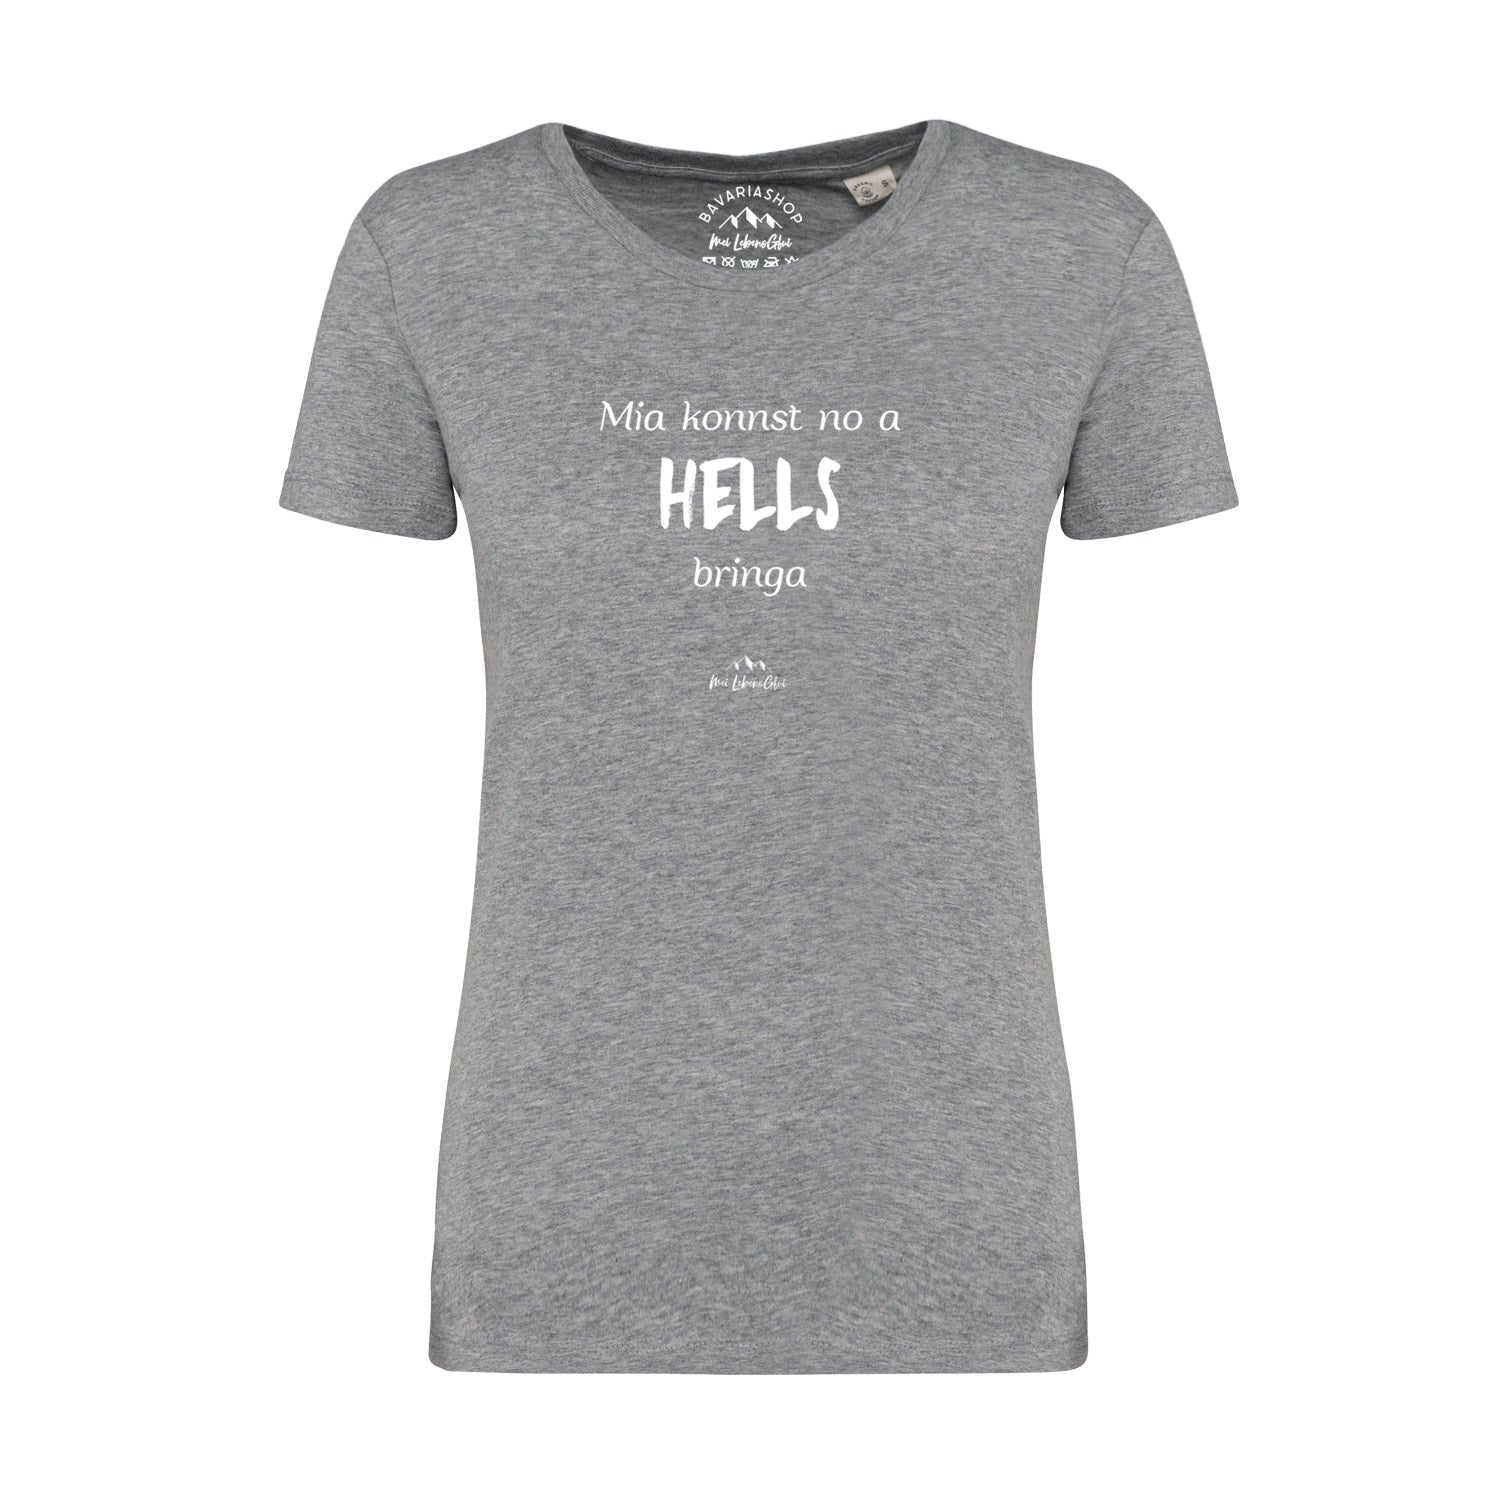 Damen T-Shirt "Mia konnst no a Hells bringa"